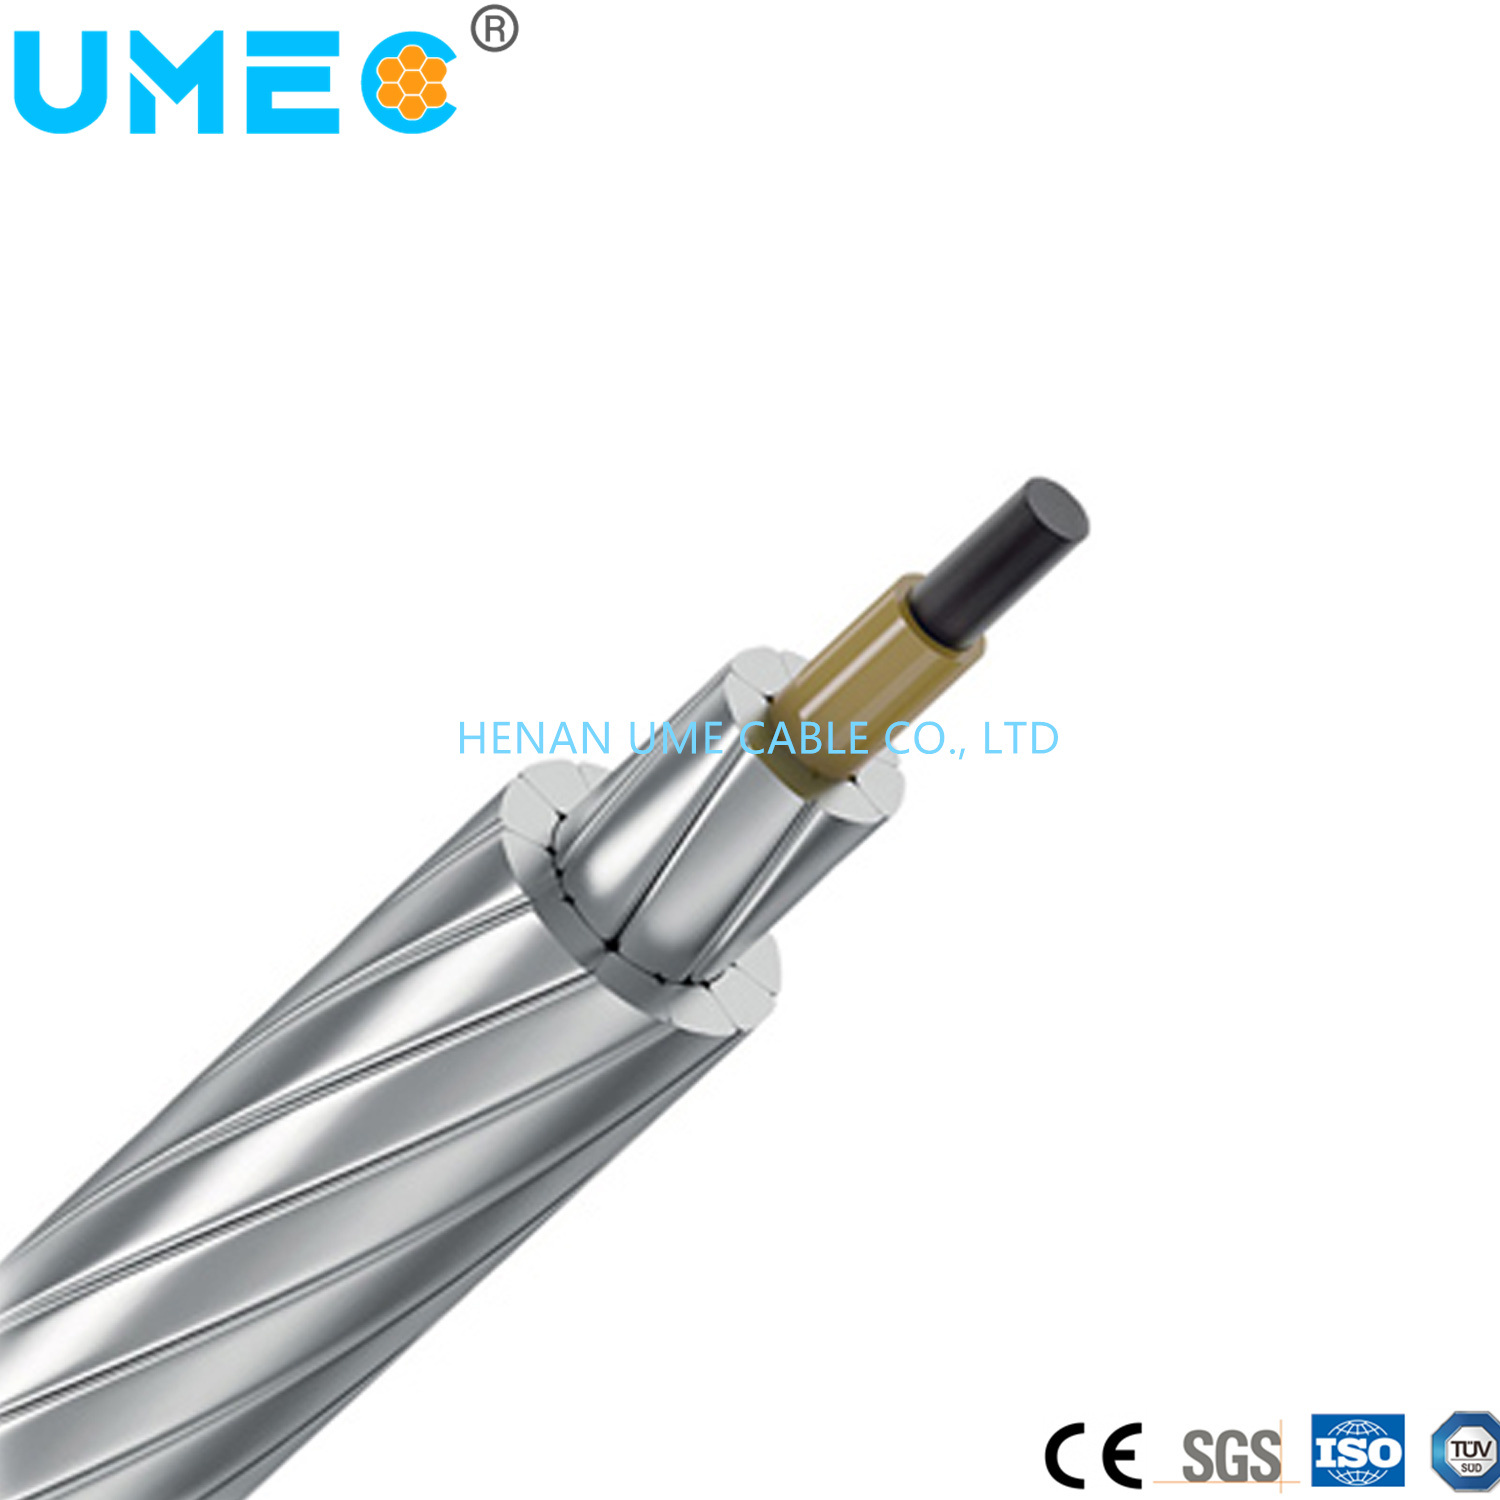 
                Accc алюминиевого провода композитного Core алюминиевых проводников из углеродного волокна композитного кабеля
            